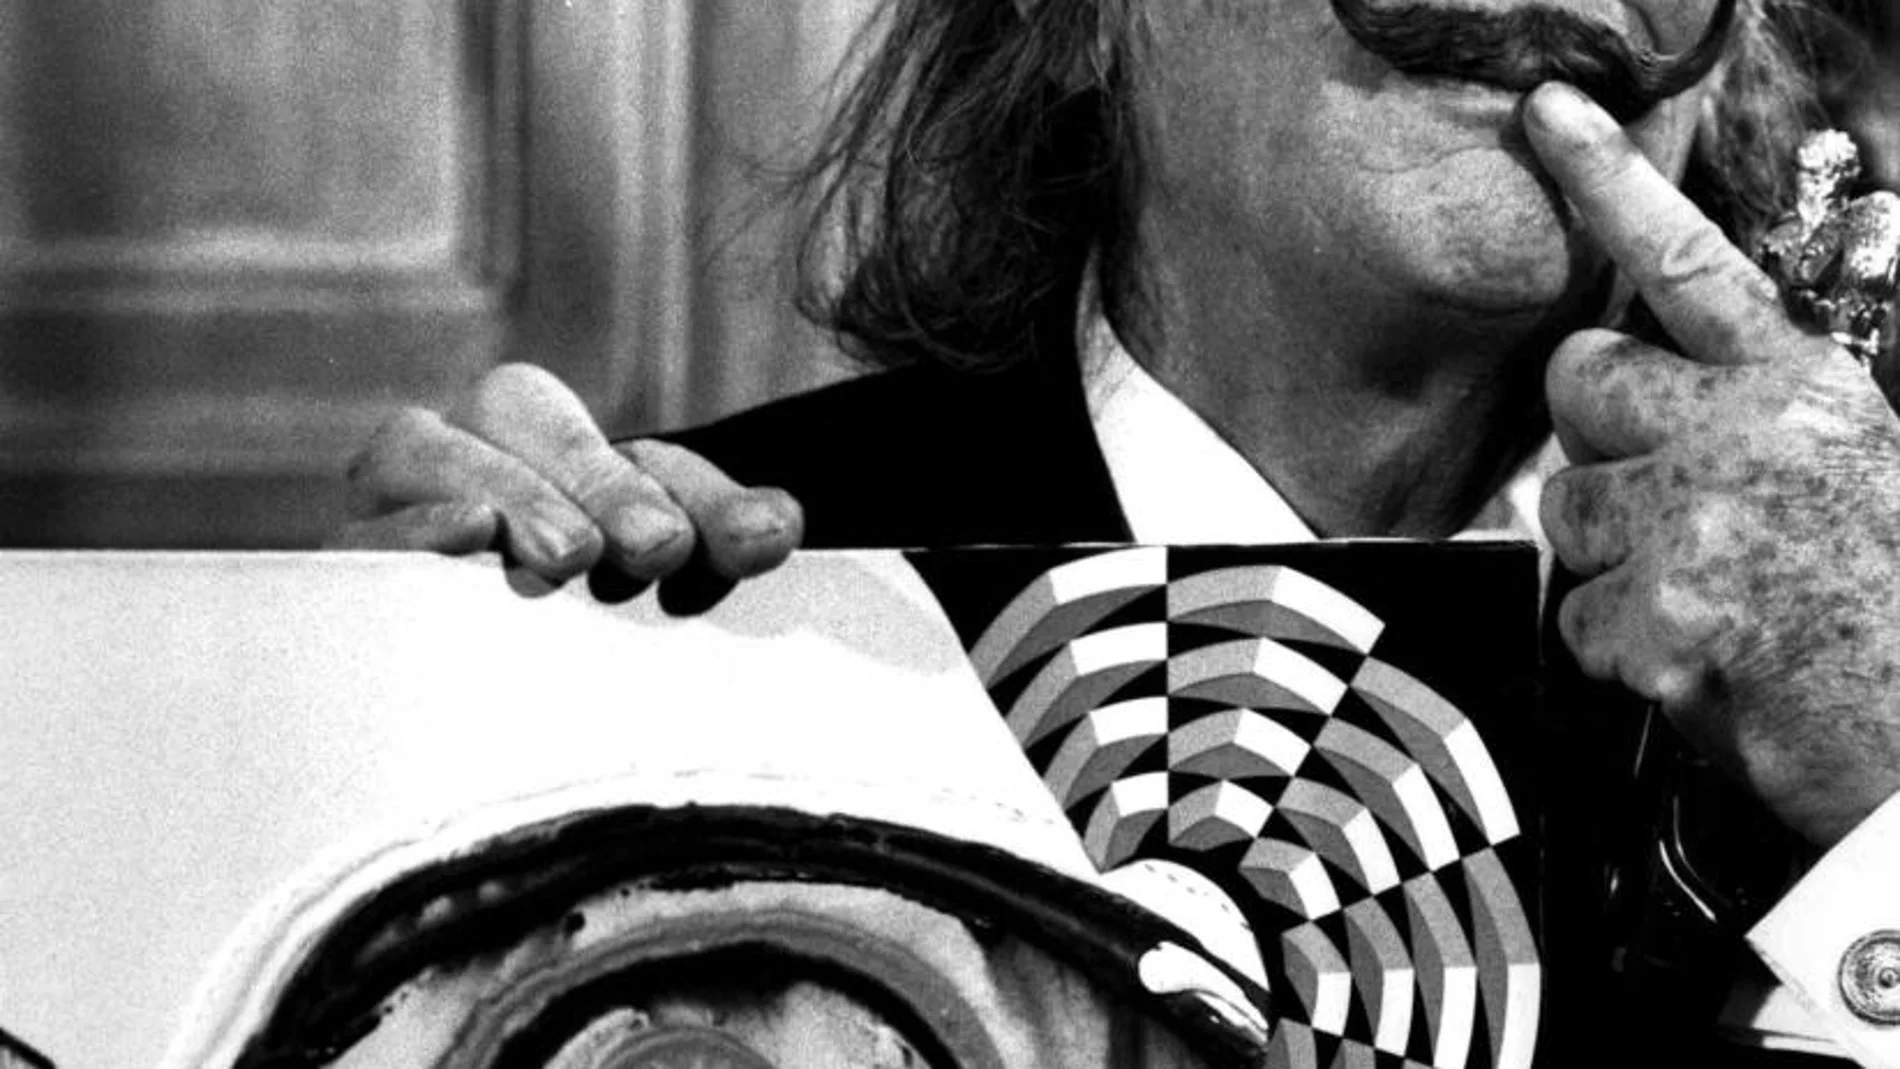 Salvador Dalí en 1975, durante una exposición en Los Ángeles